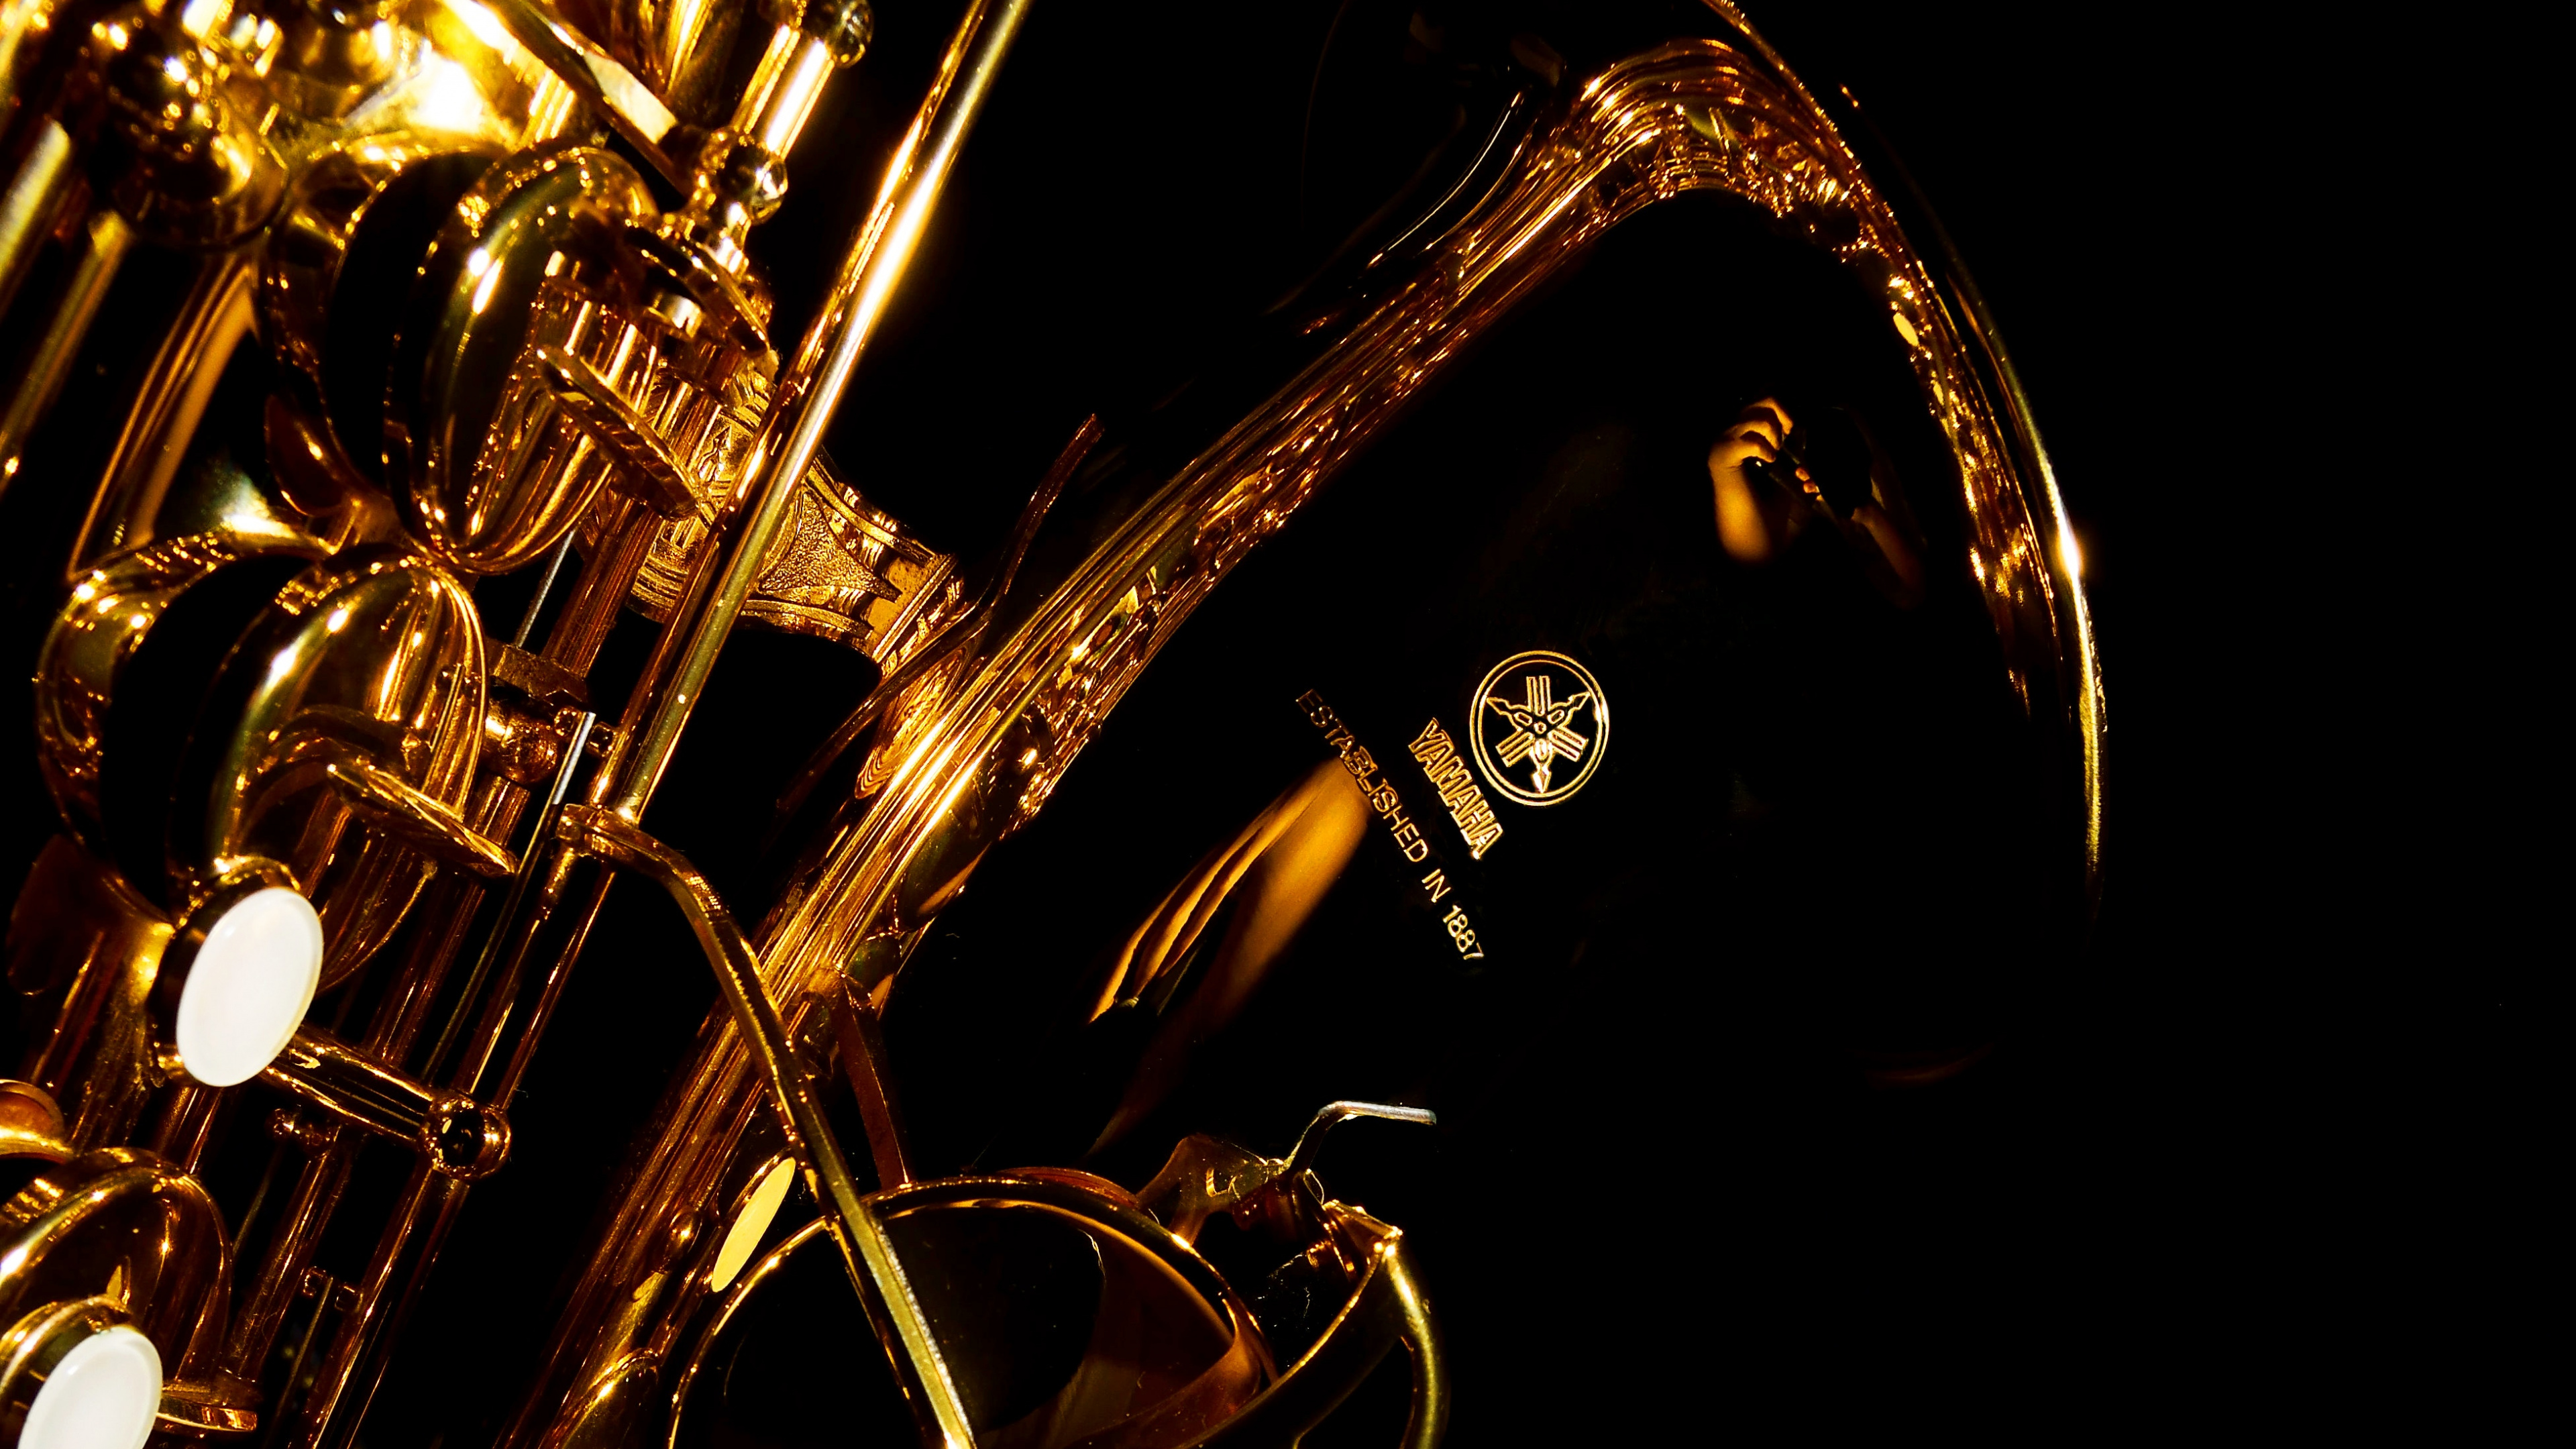 Trompette, Saxophone, Instrument de Cuivre, Instrument à Vent, Instrument de Musique. Wallpaper in 3840x2160 Resolution